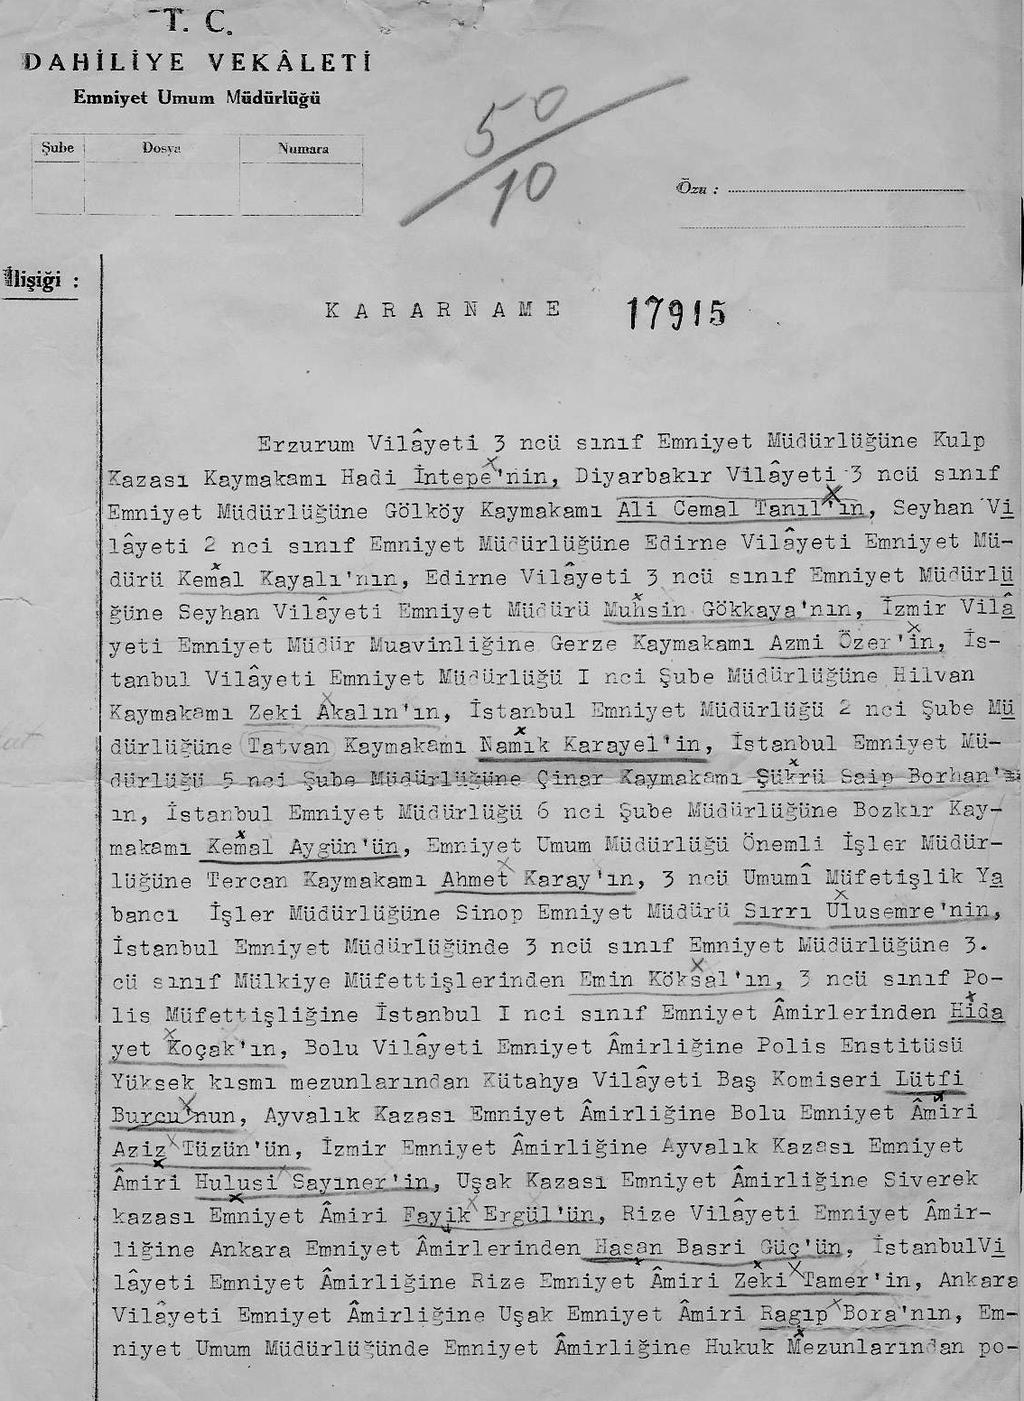 EK- 22-a 1943 Yılında Yapılan Polis Amirleri Tayin Kararnamesi Kaynak: Emniyet Genel Müdürlüğü Arşiv